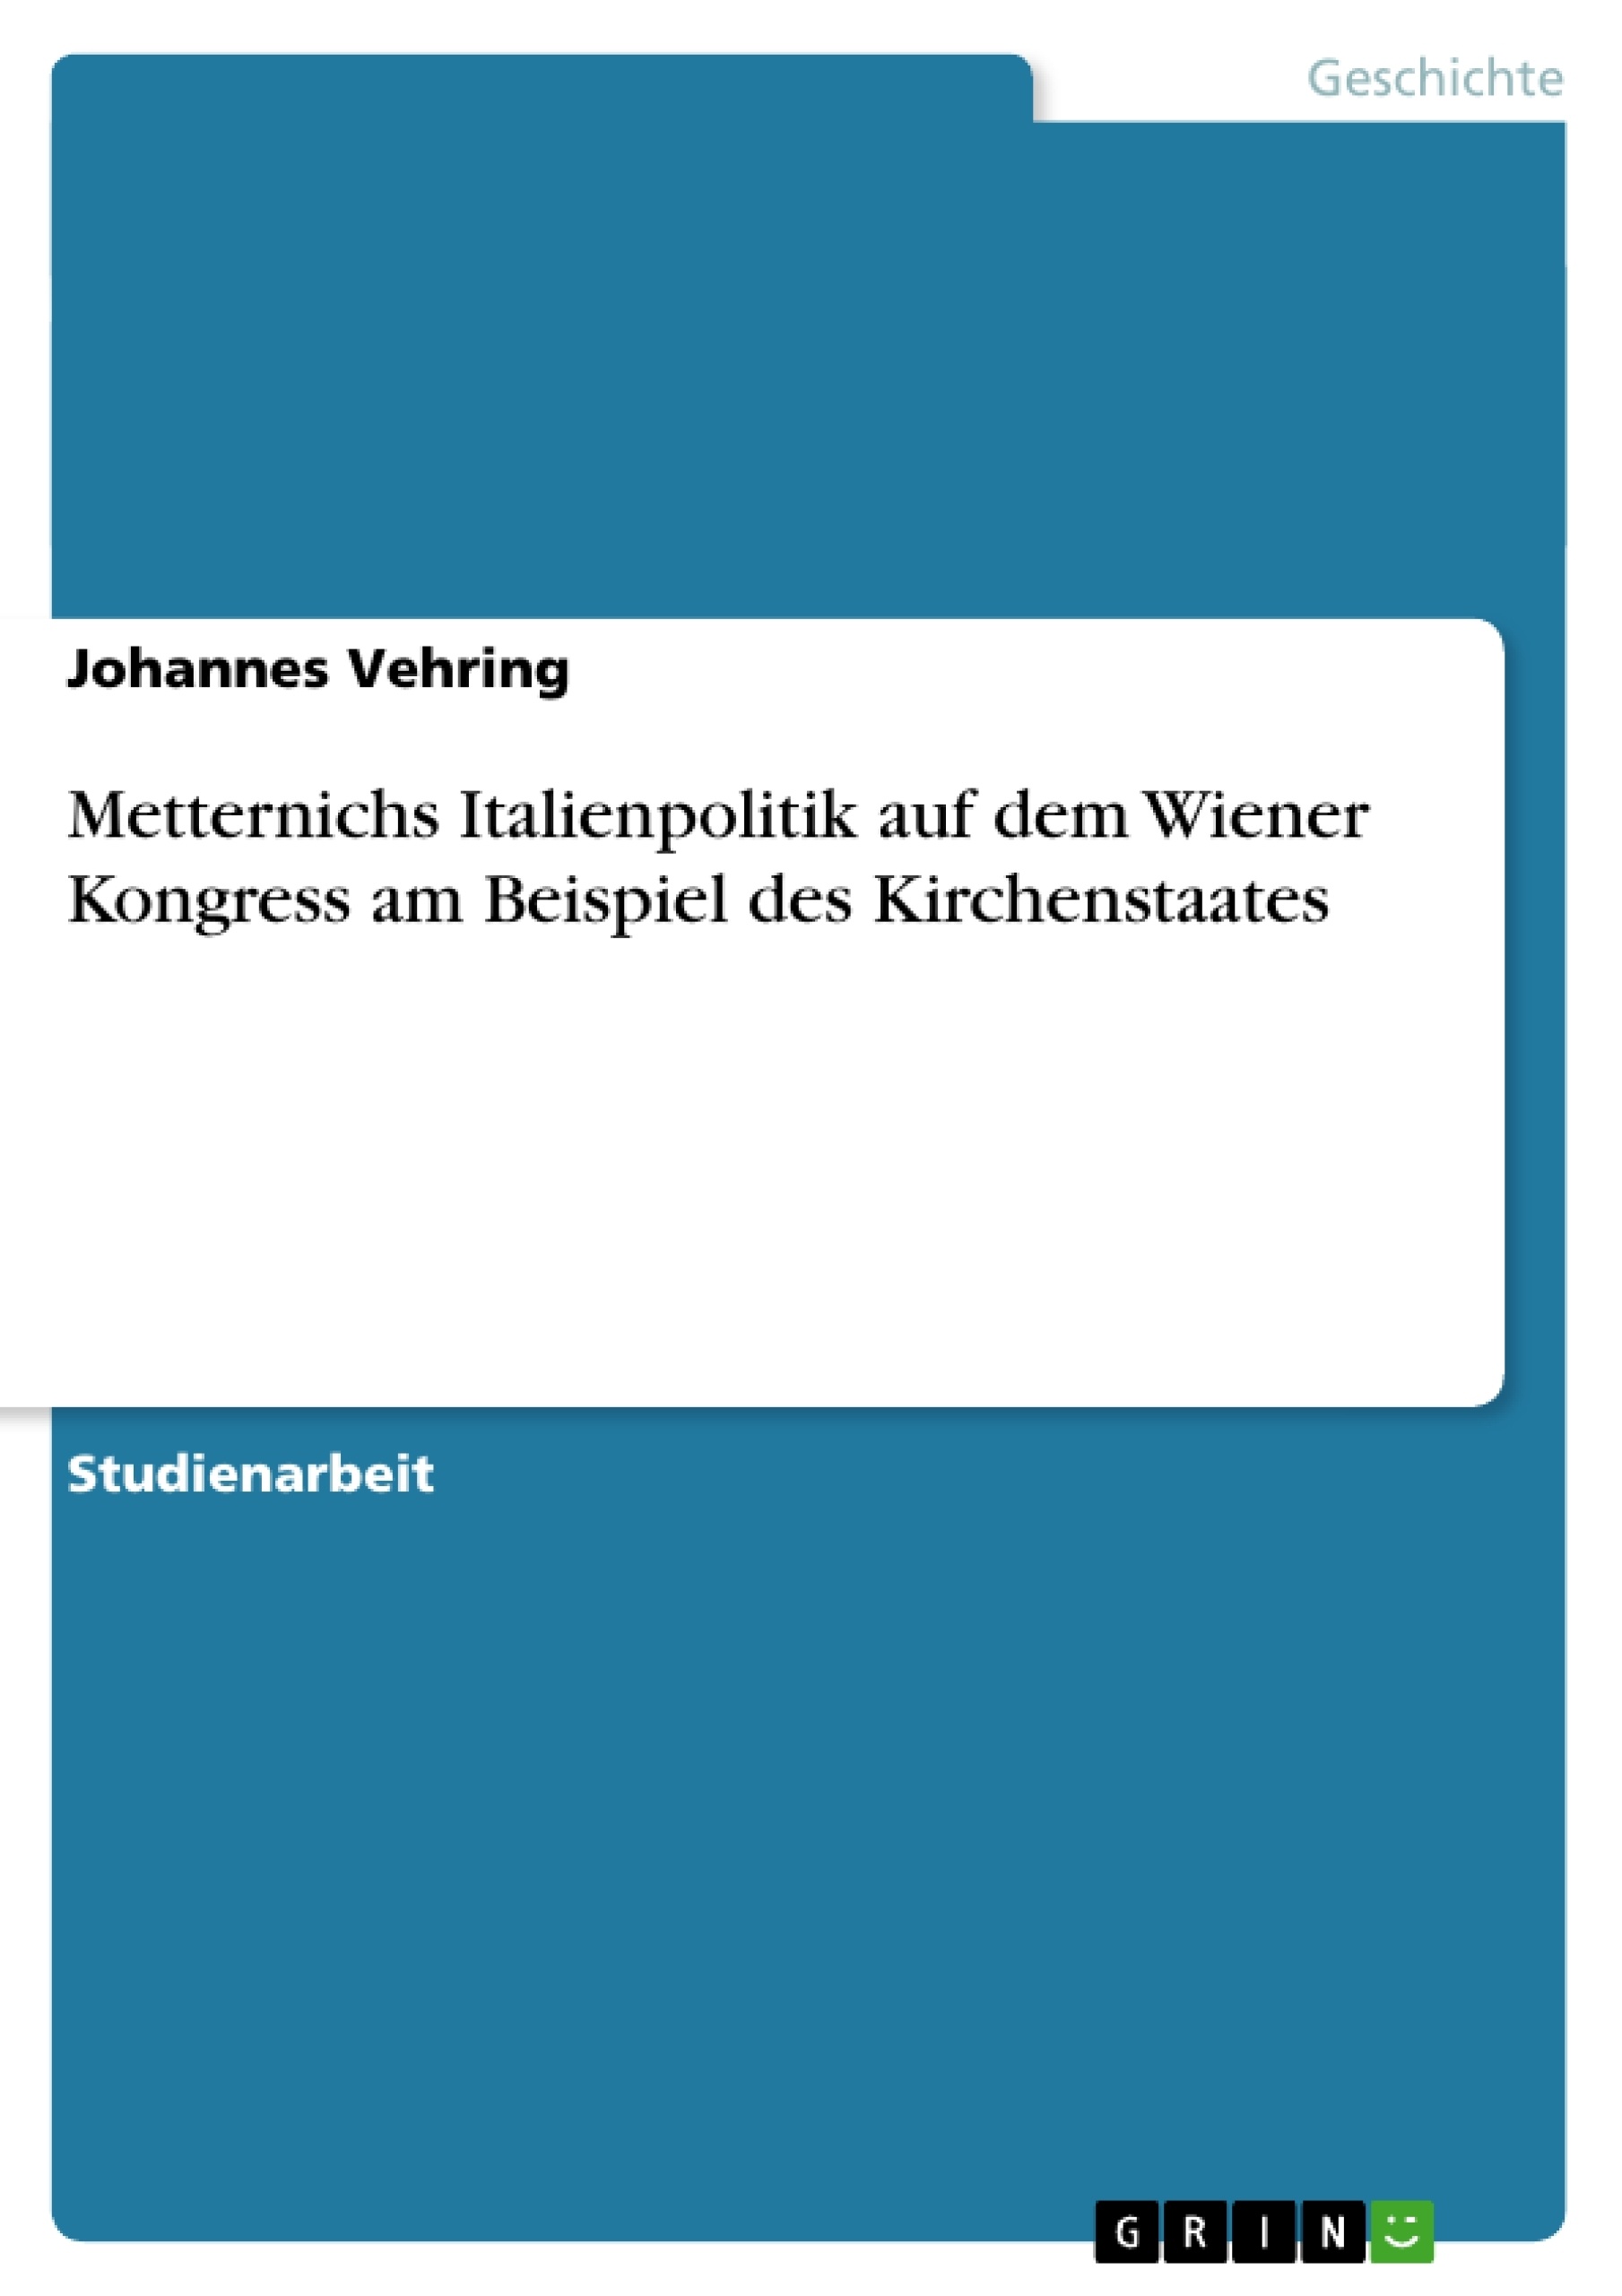 Title: Metternichs Italienpolitik auf dem Wiener Kongress am Beispiel des Kirchenstaates